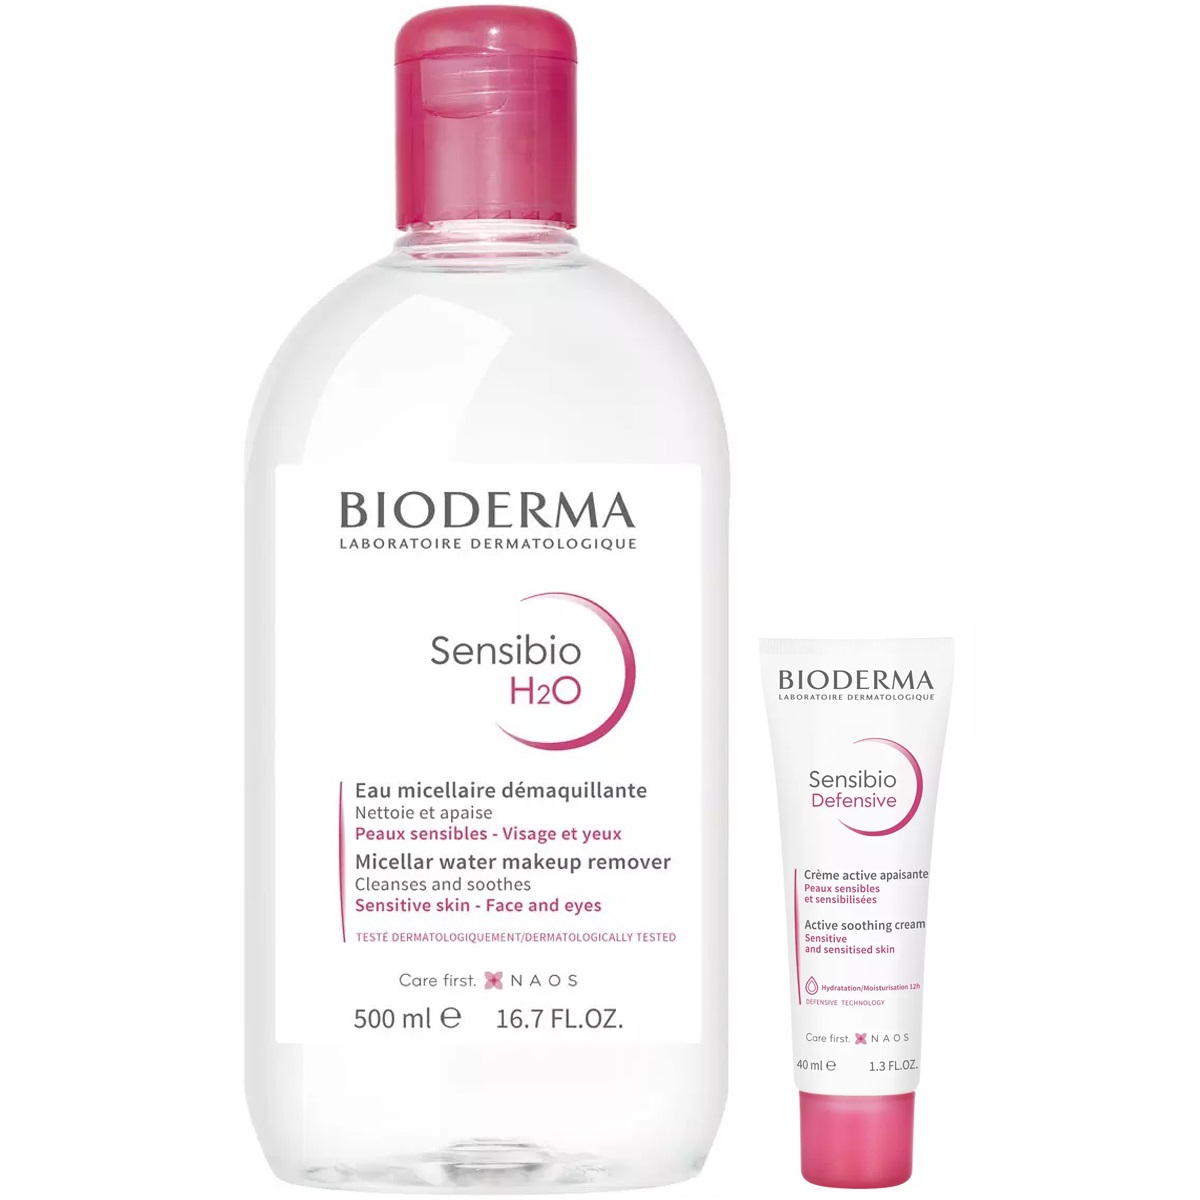 Bioderma Набор для чувствительной кожи: мицеллярная вода, 500 мл + крем, 40 мл (Bioderma, Sensibio) вода мицеллярная для нормальной и чувствительной кожи лица н2о sensibio bioderma биодерма помпа 500мл